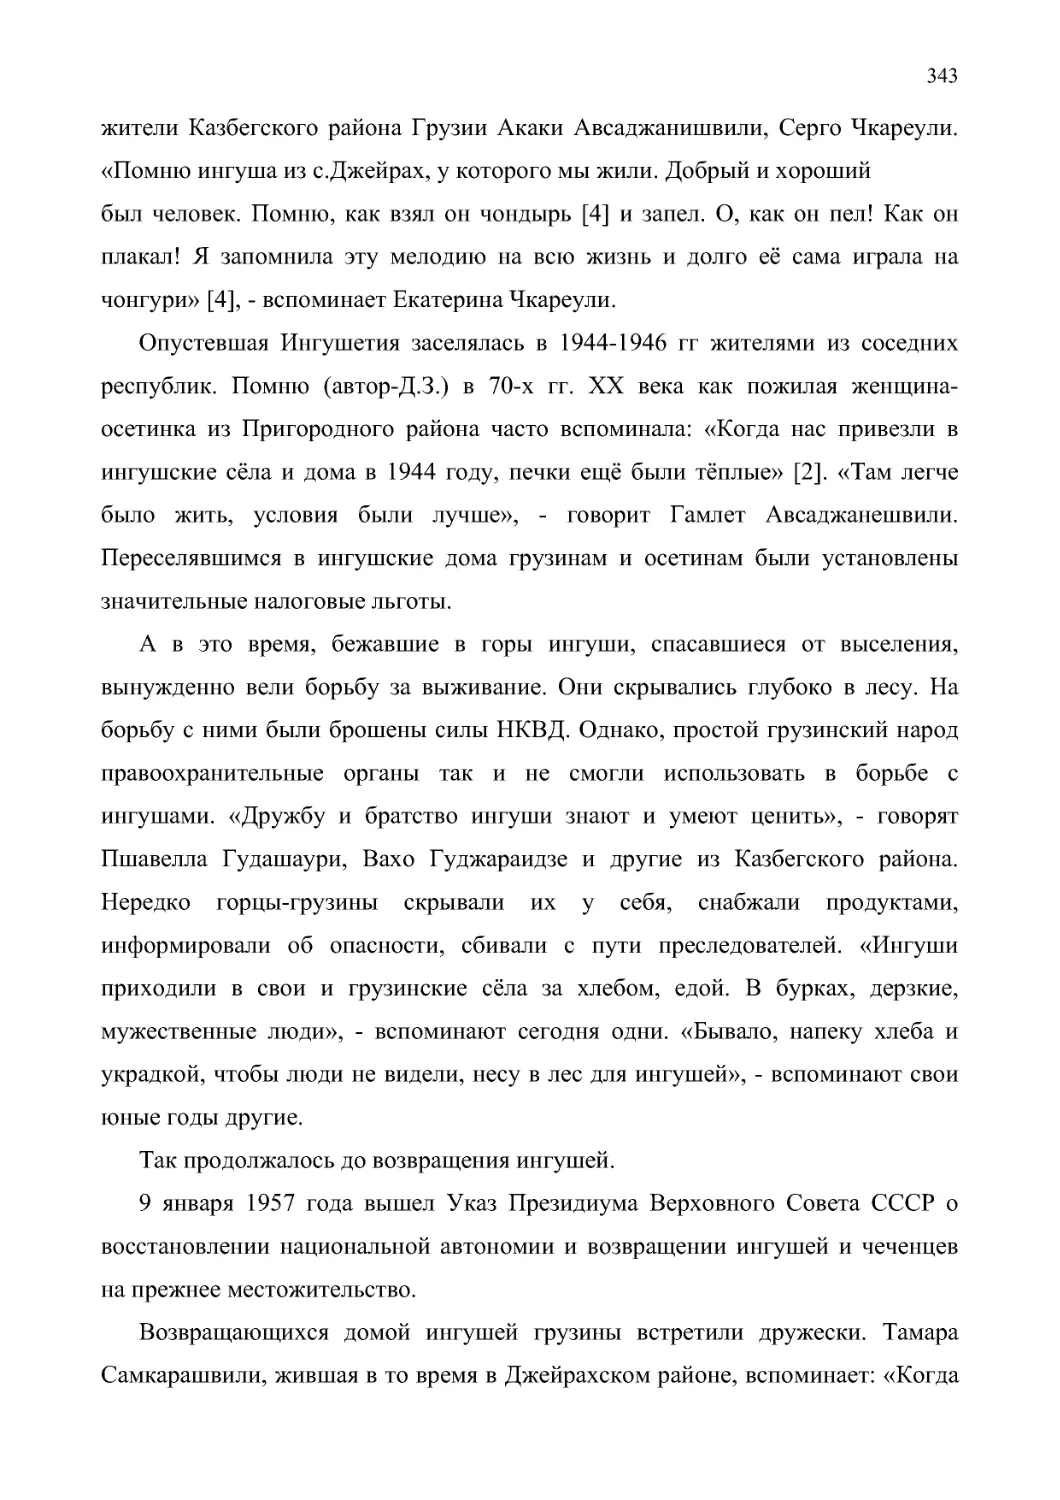 Так продолжалось до возвращения ингушей.
9 января 1957 года вышел Указ Президиума Верховного Совета СССР о восстановлении национальной автономии и возвращении ингушей и чеченцев на прежнее местожительство.